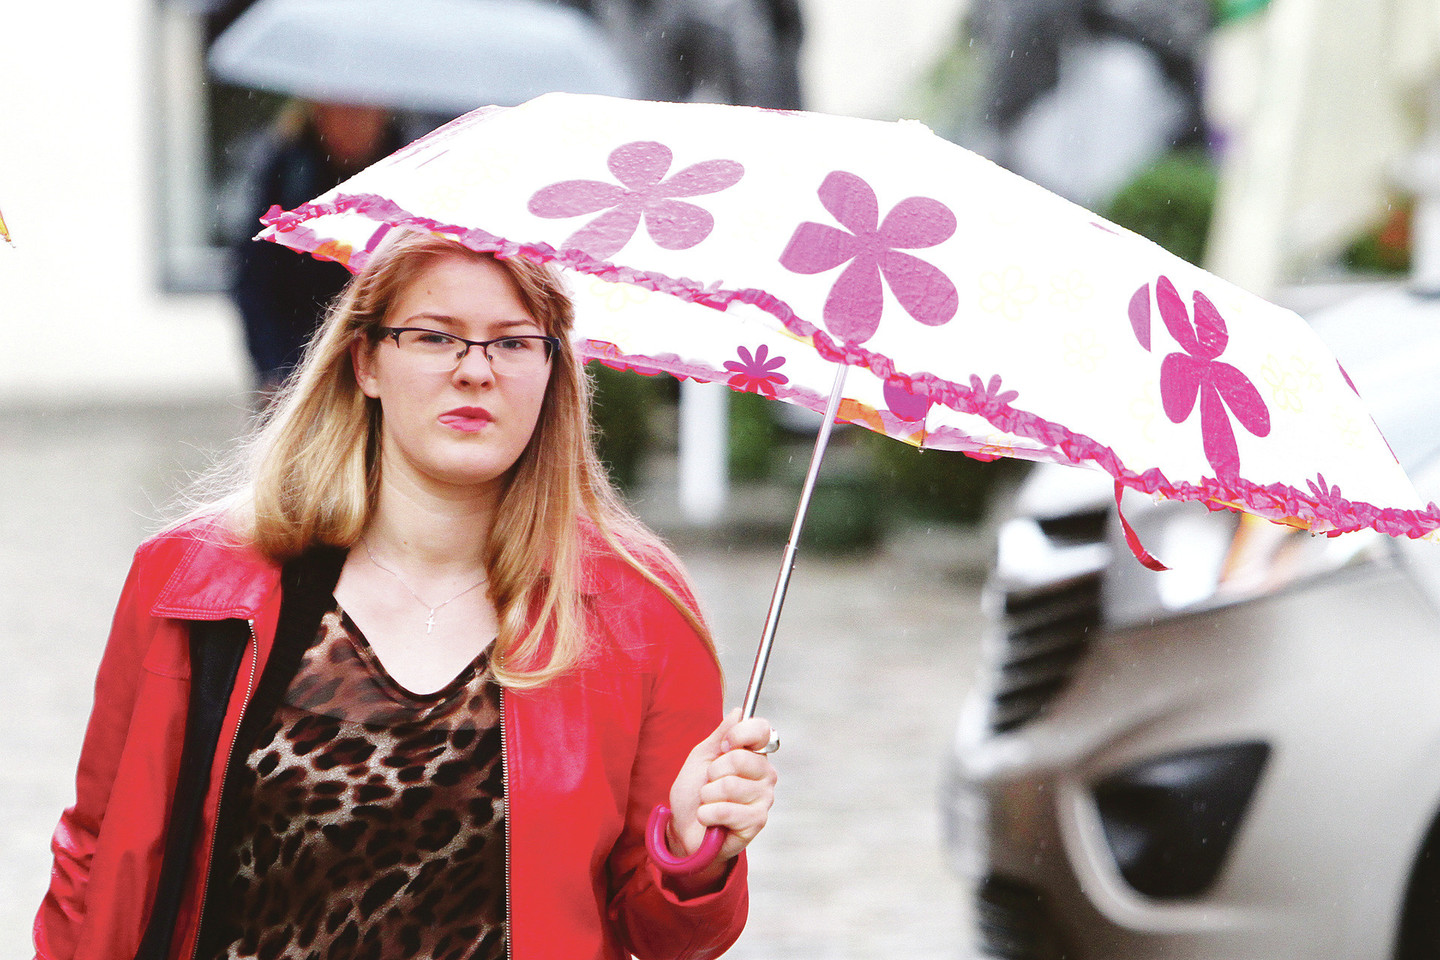 Gėlėti ir miesto vaizdais dekoruoti skėčiai traukia praeivių dėmesį ir vilioja geriau įsižiūrėti į jų savininkes.